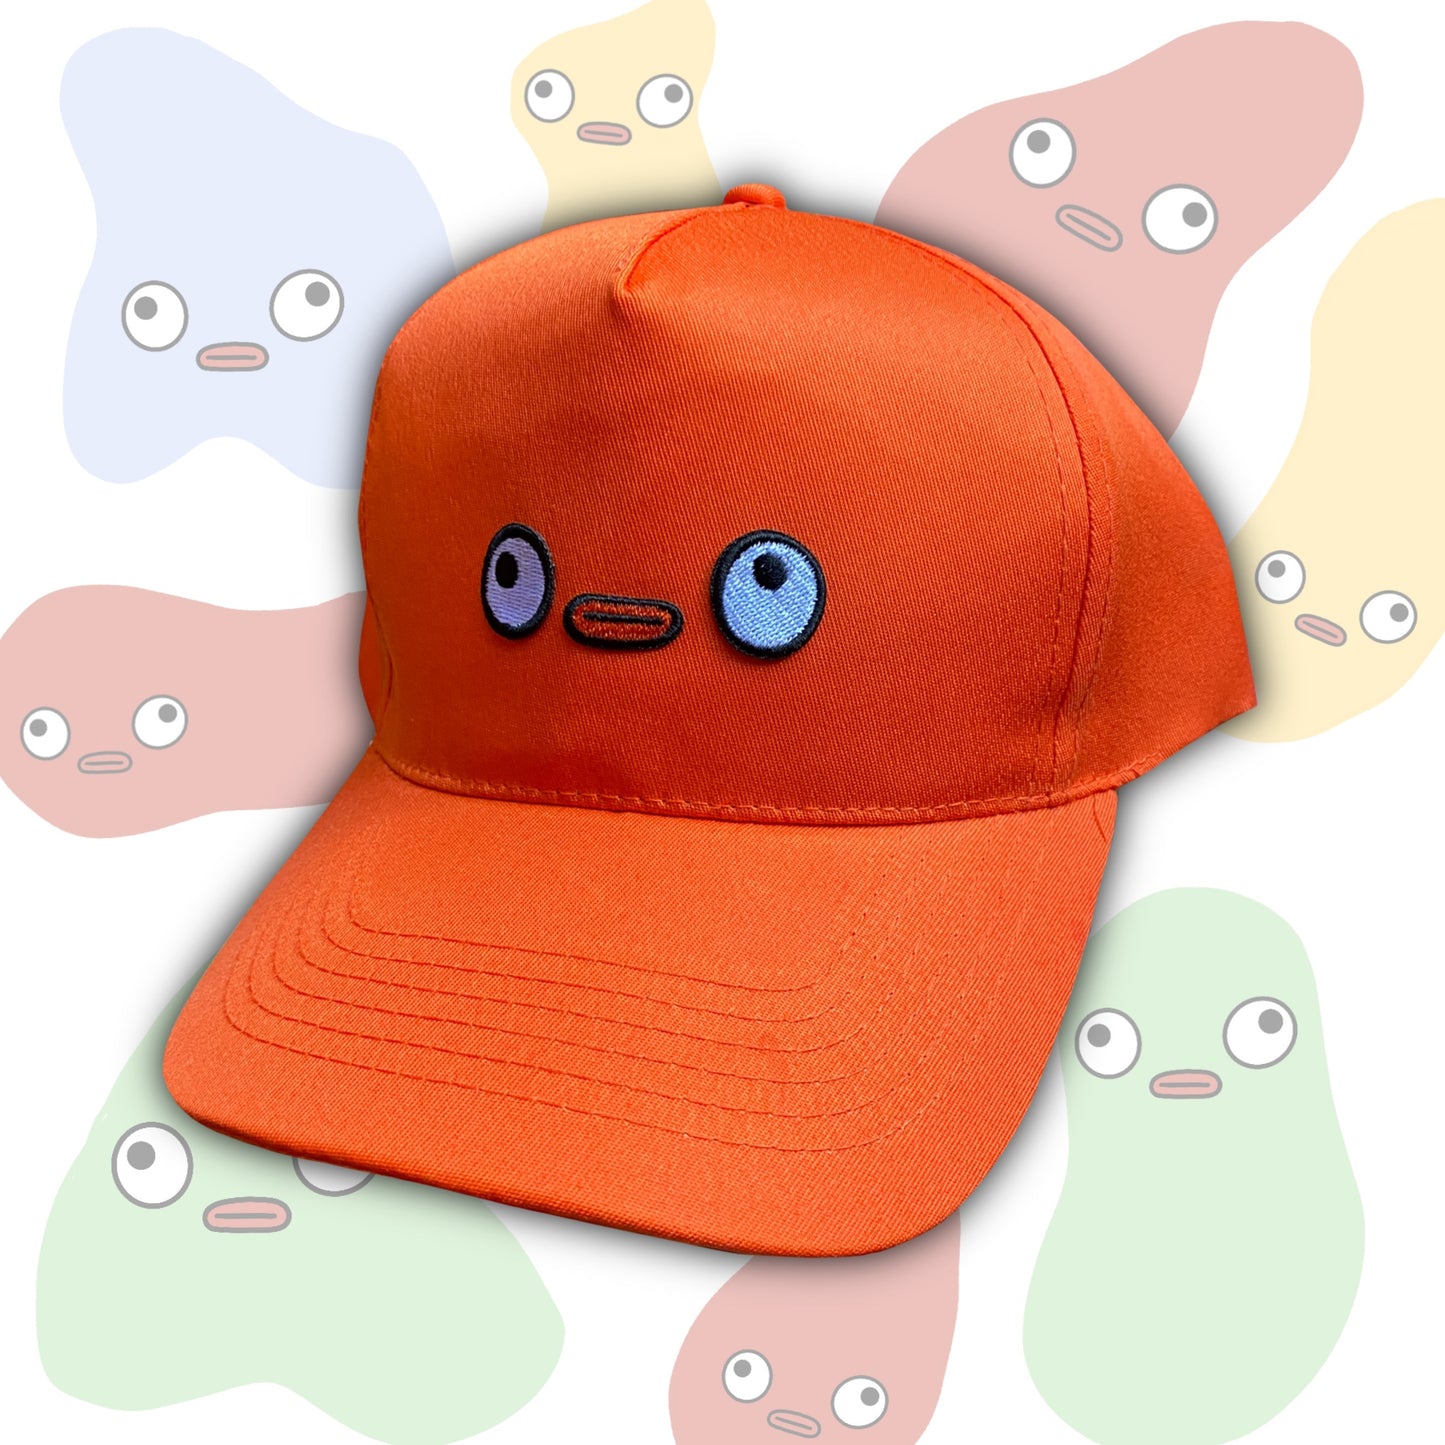 8. orange giblitz cap